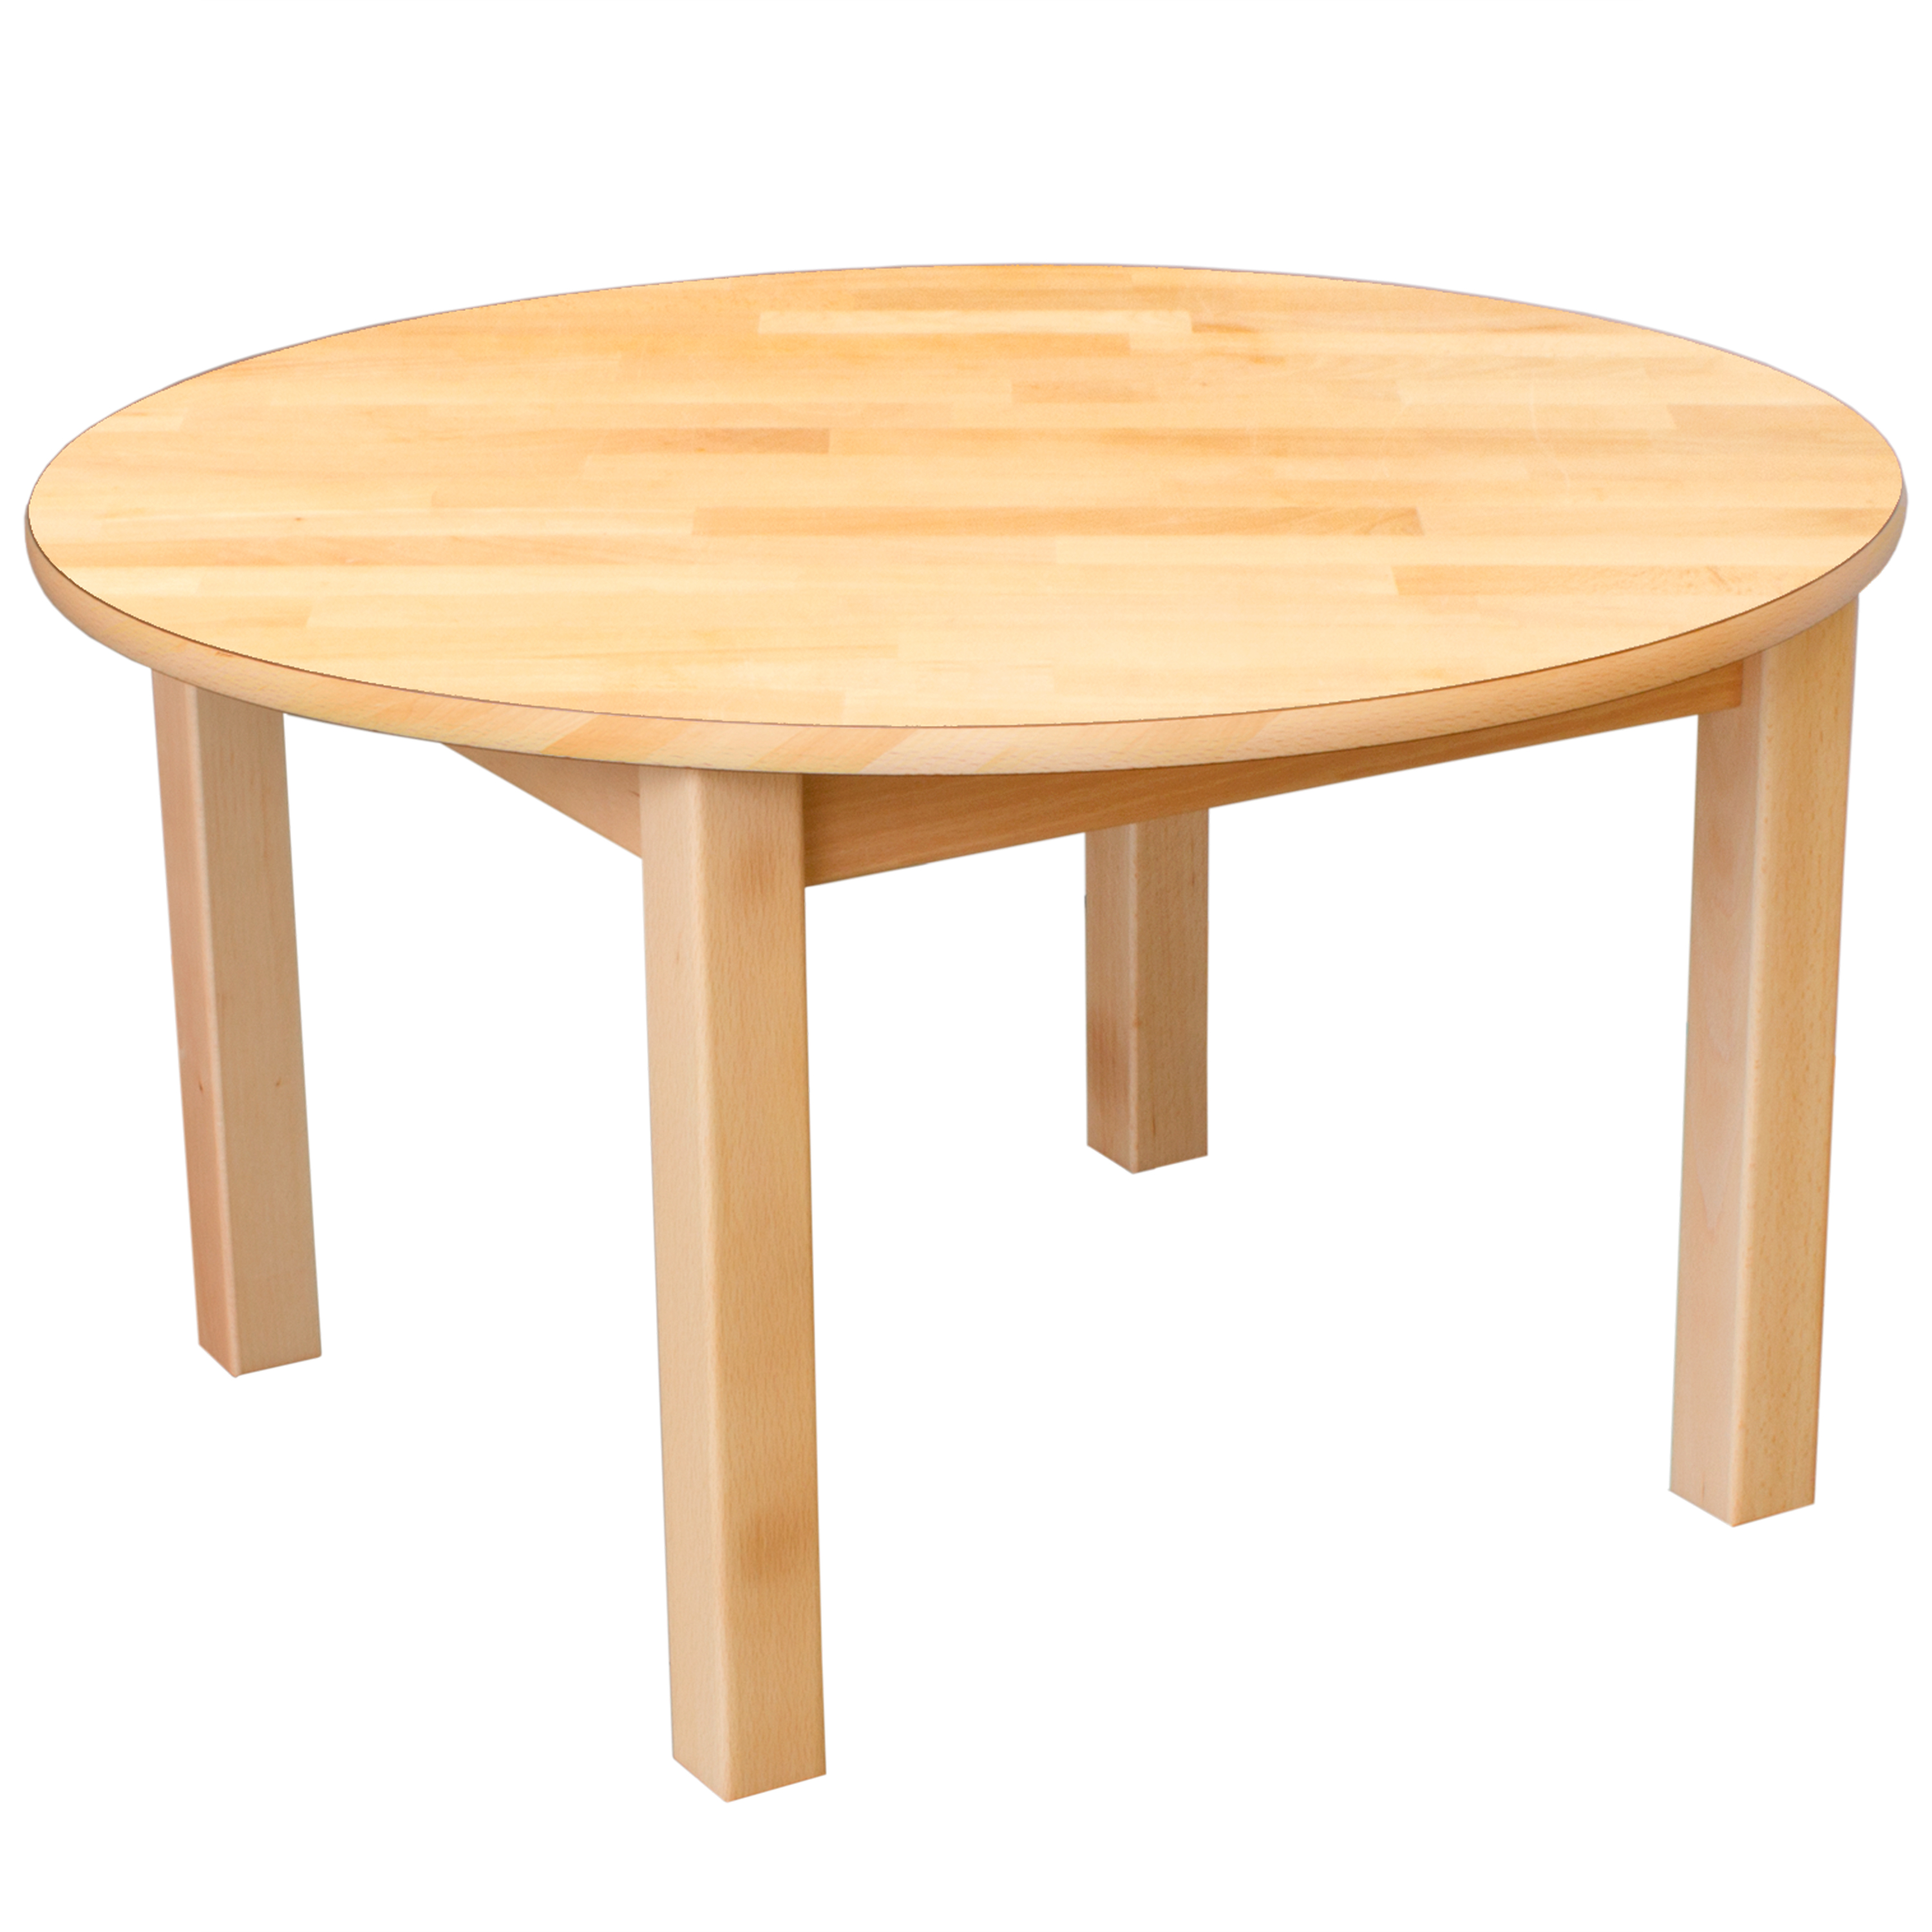 Runder Tisch aus Massivholz, Ø 60 cm, Tischhöhe 40 cm